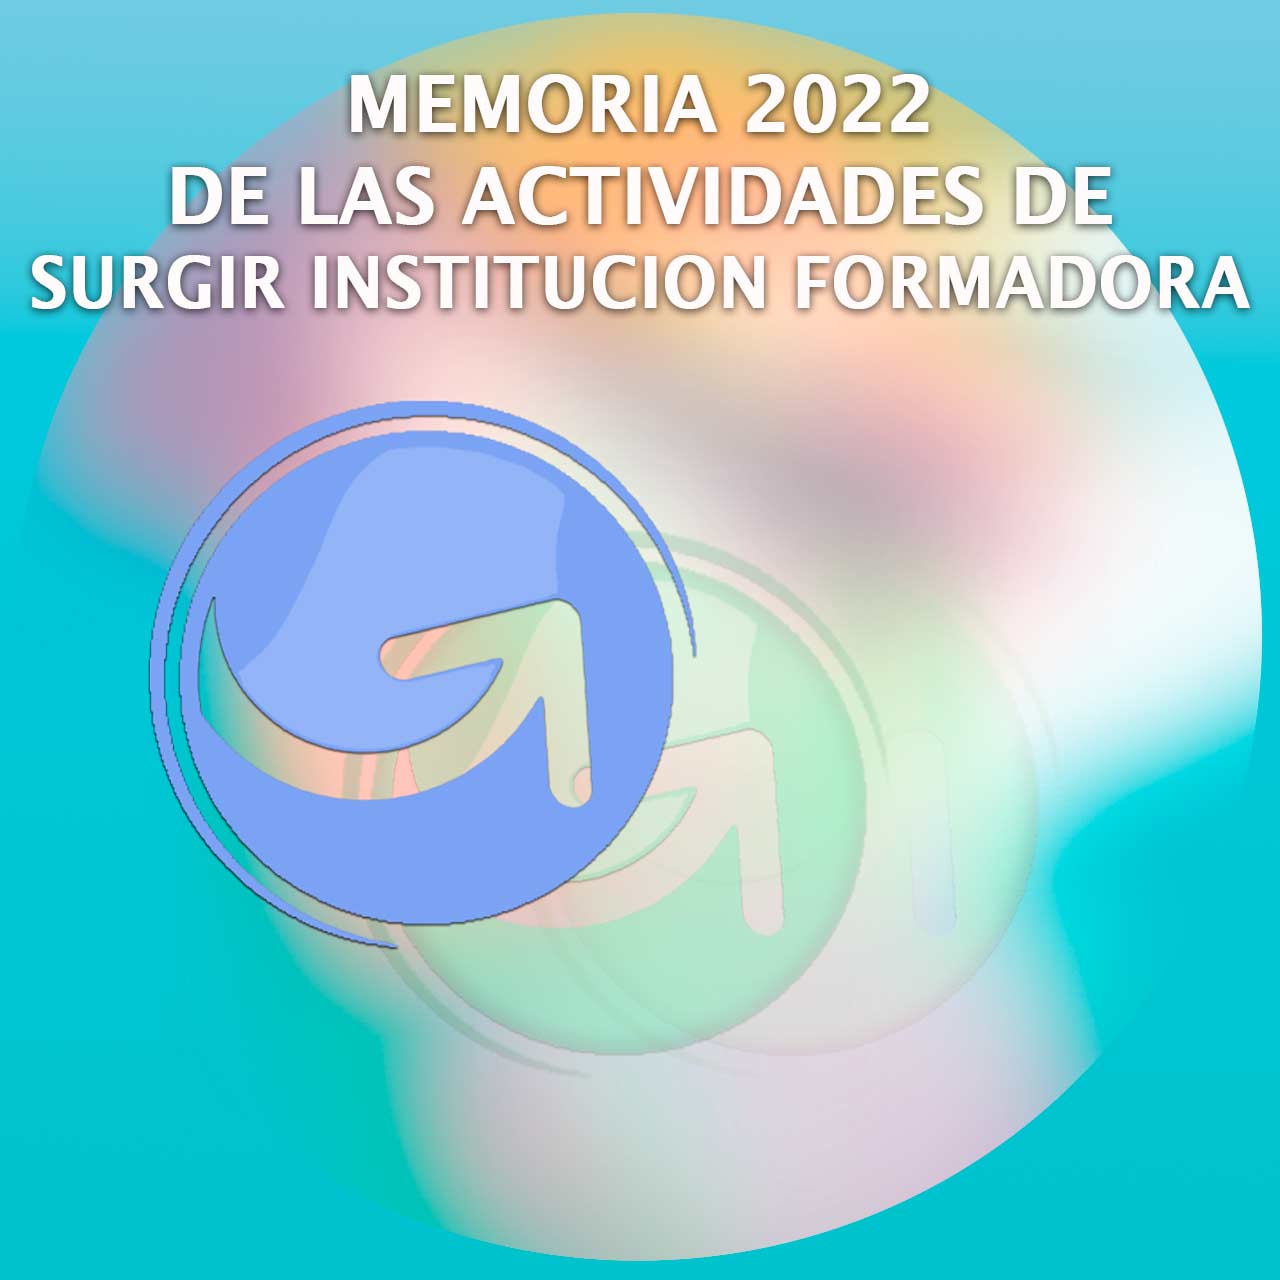 MEMORIA 2022 DE LAS ACTIVIDADES DE SURGIR INSTITUCION FORMADORA